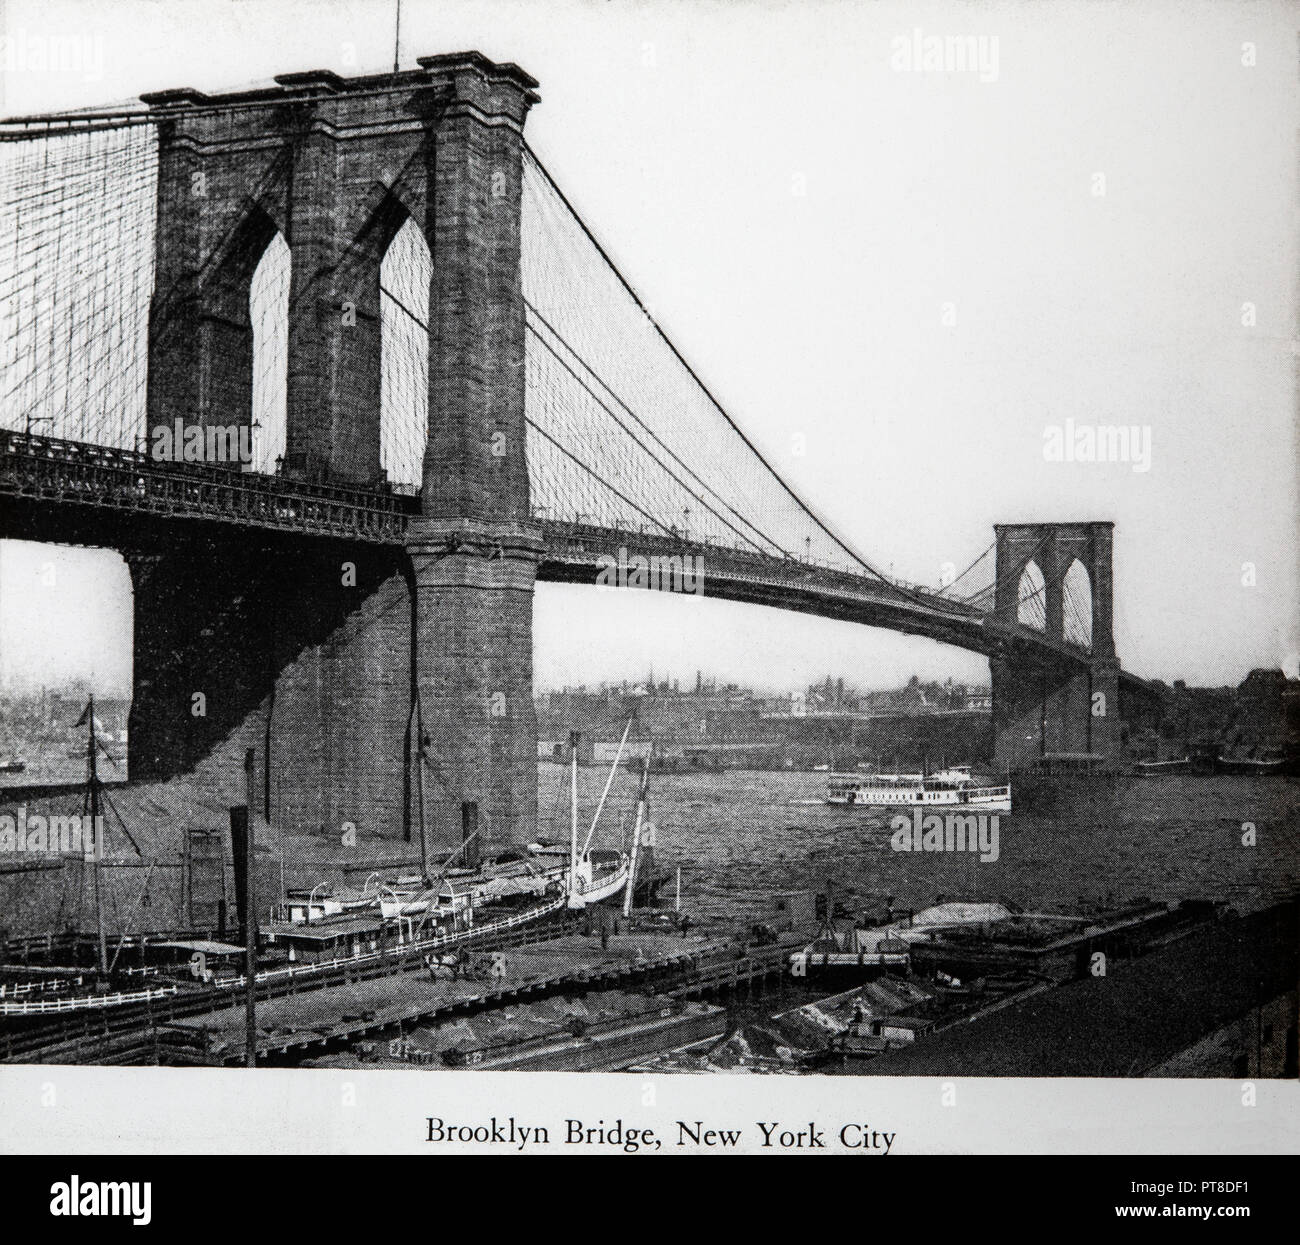 Einen späten 19. oder frühen 20. Jahrhundert schwarz-weiß Foto von der Brooklyn Bridge in New York, USA. Stockfoto